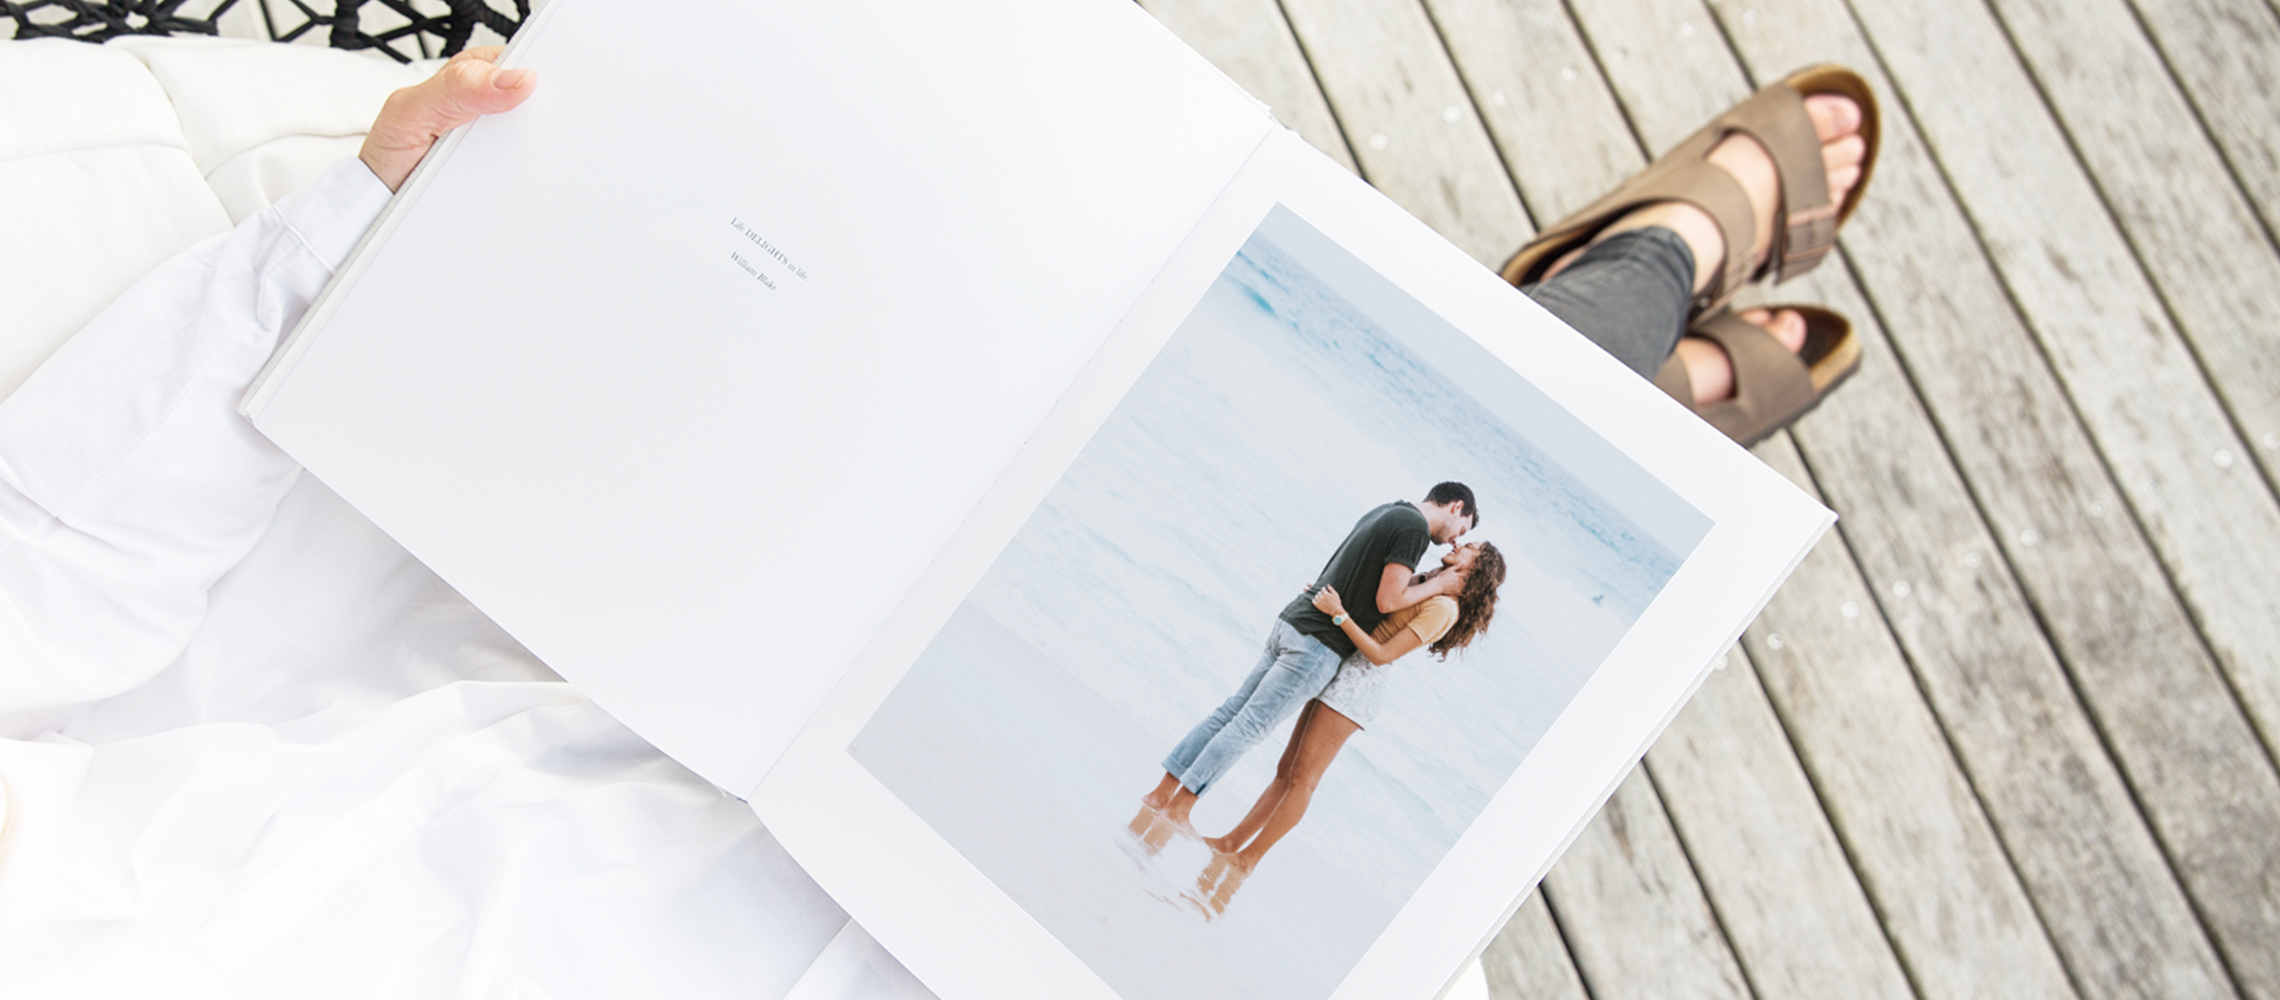 Álbum de fotos abierto con la imagen de una pareja besándose en la playa.